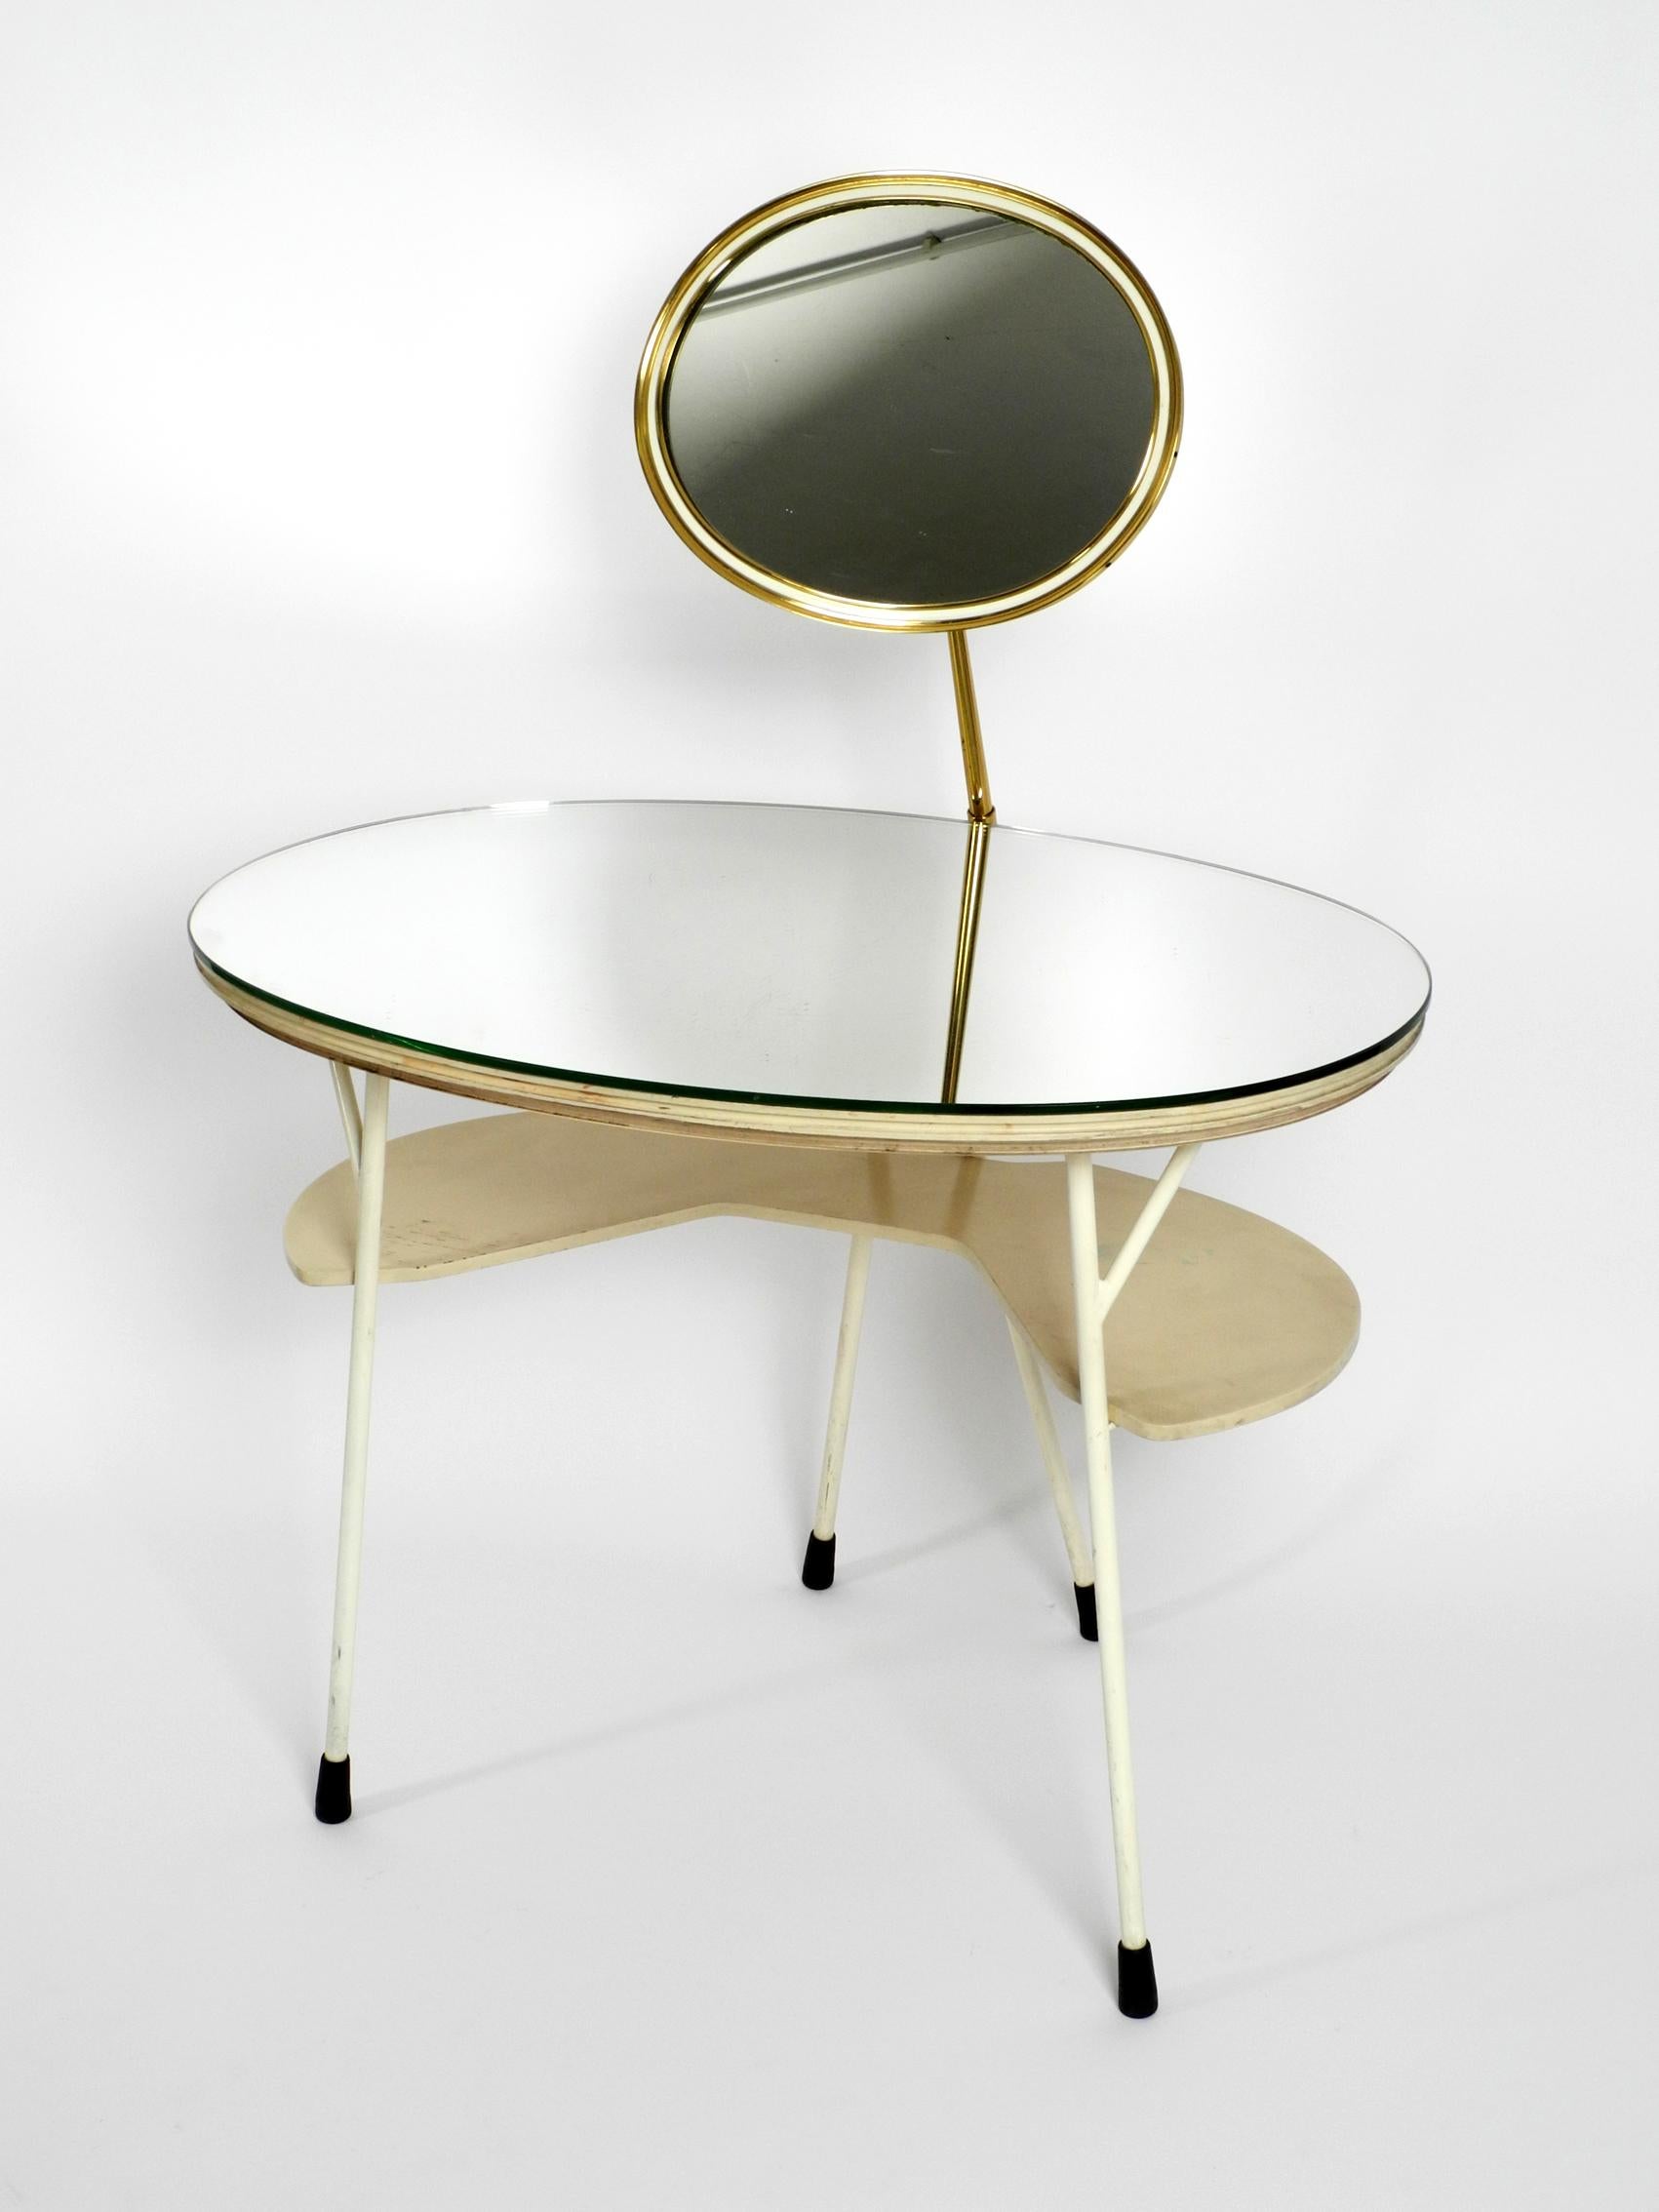 Mid-20th Century Mid-Century Modern Make Up Mirror Dressing Table from the Vereinigte Werkstätten